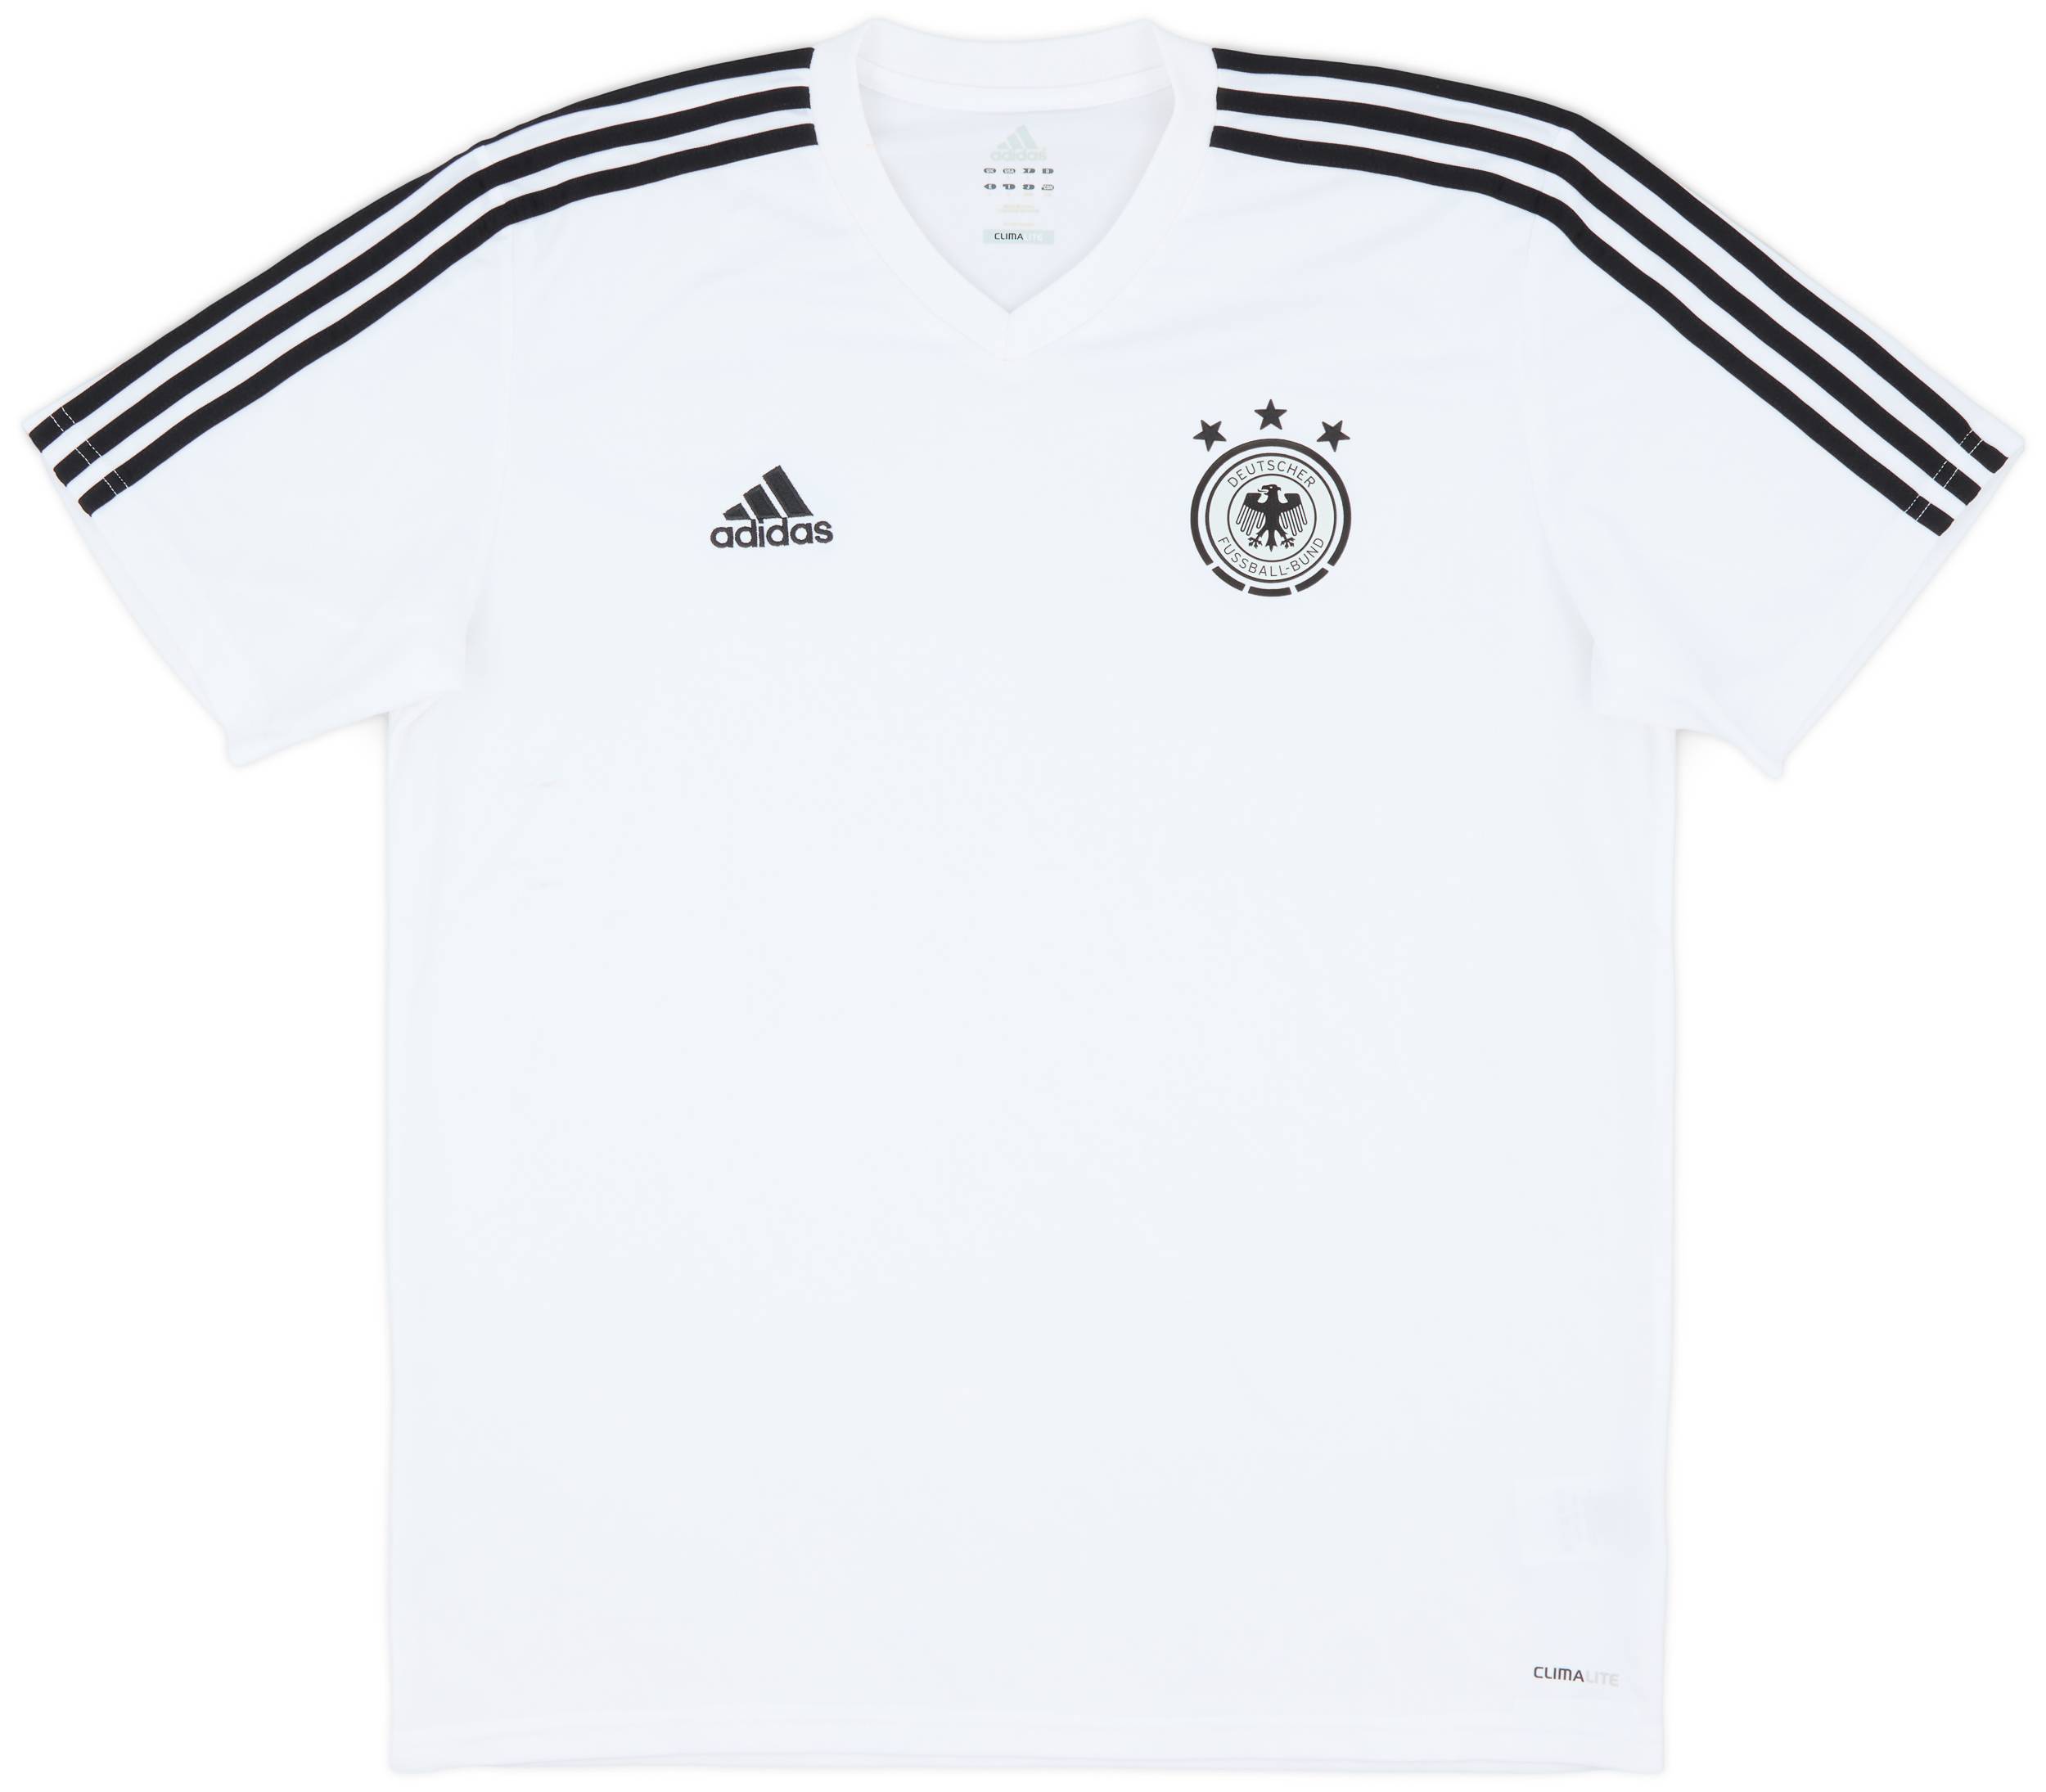 2012-13 Germany adidas Training Shirt - 6/10 - (L)